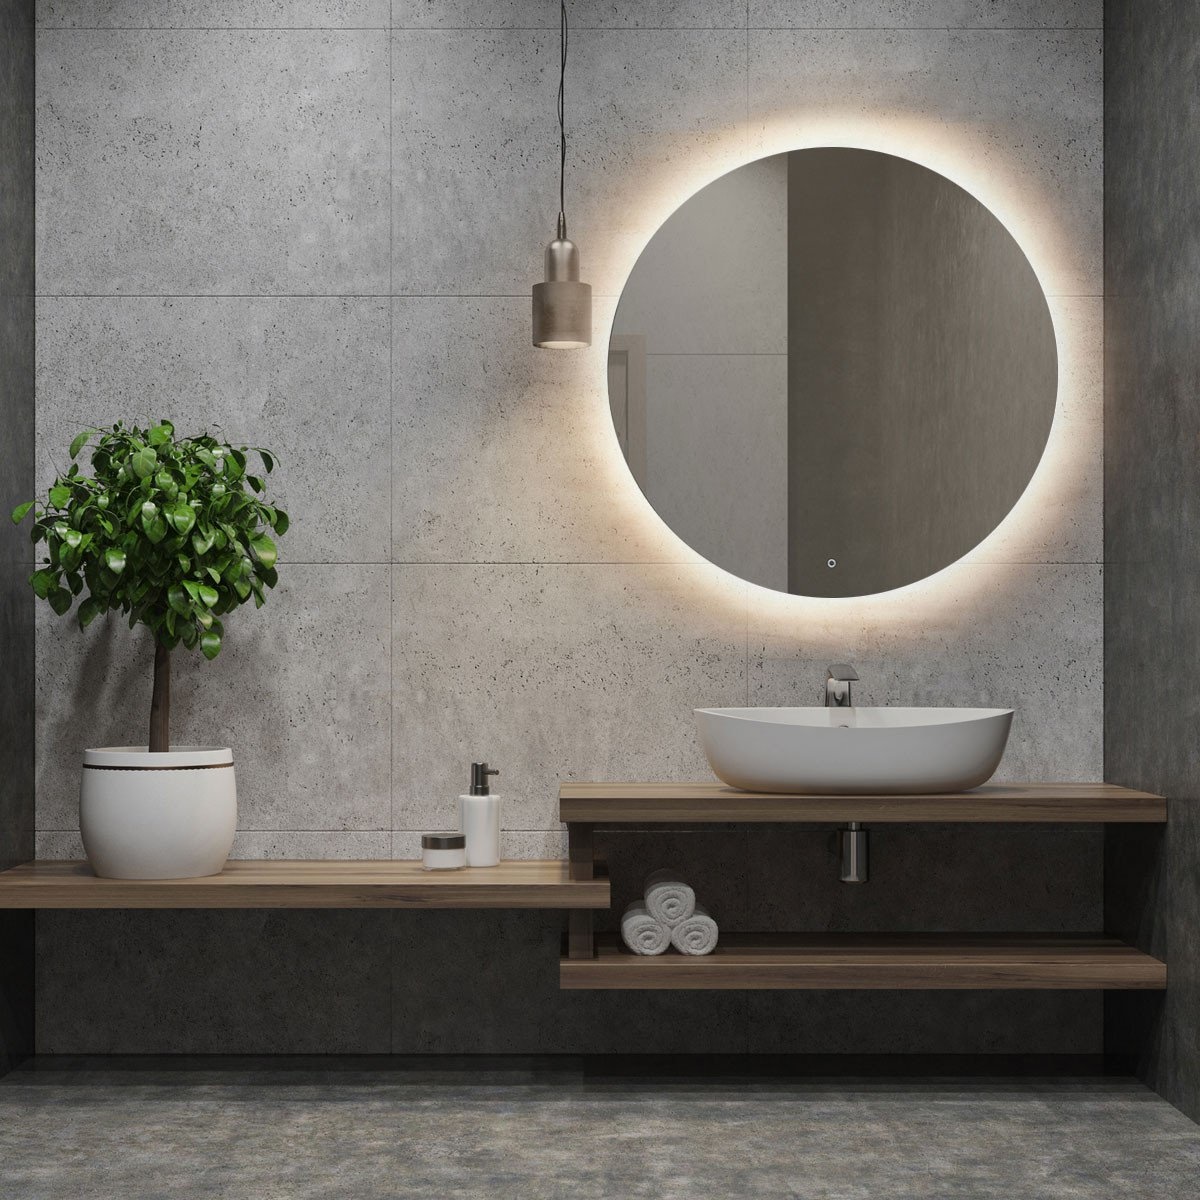 Ronde LED-spiegel met verlichting, dimbare badkamerspiegel met